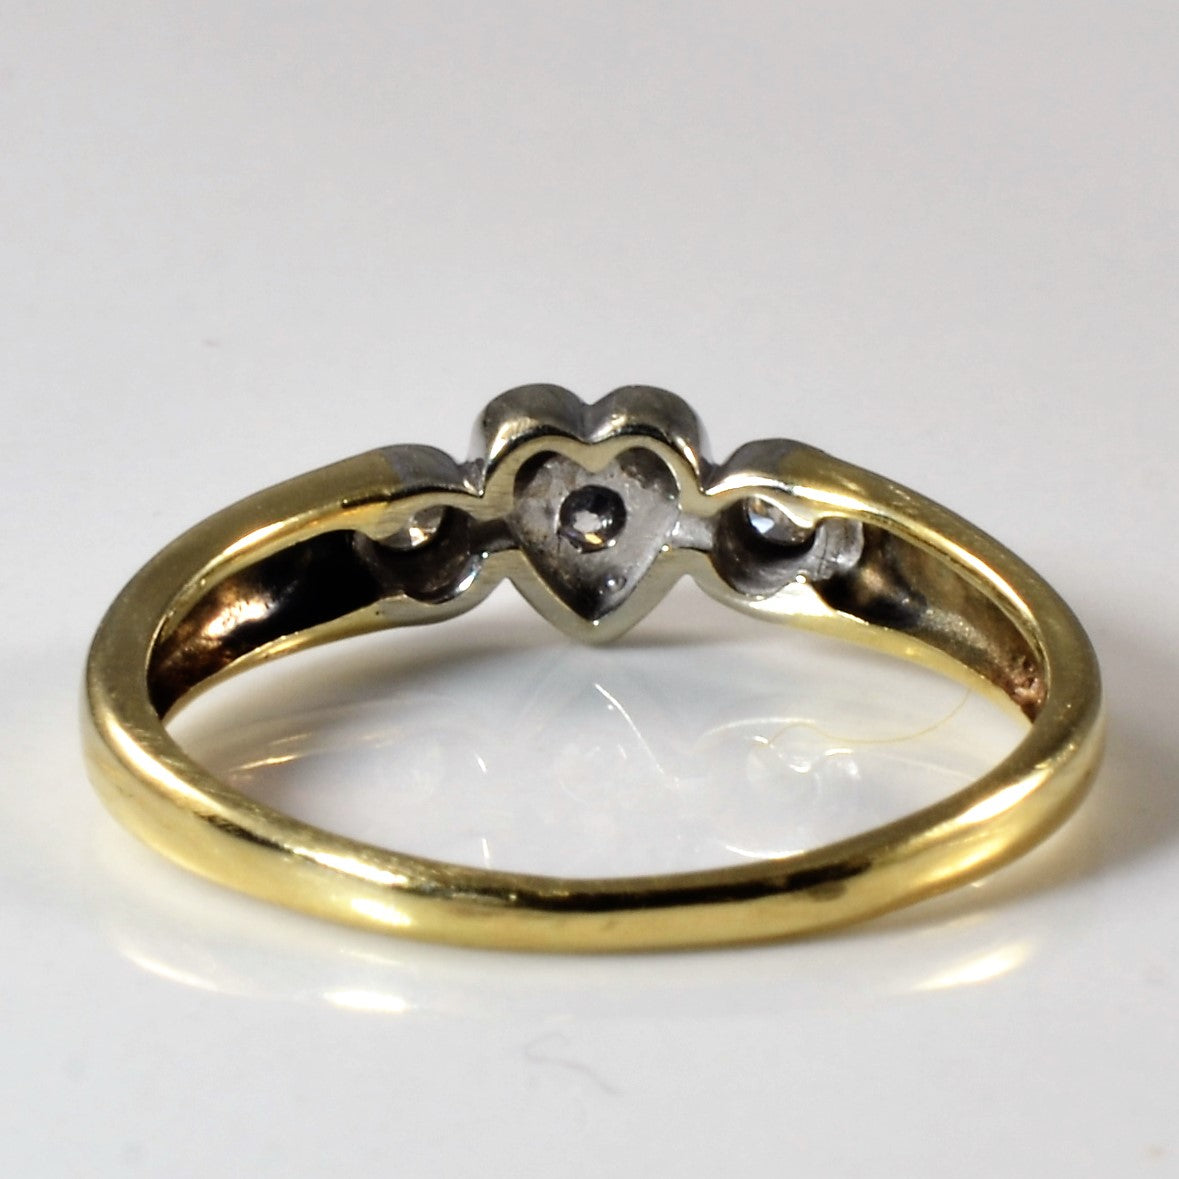 Bezel Set Diamond Heart Ring | 0.10ctw | SZ 6 |